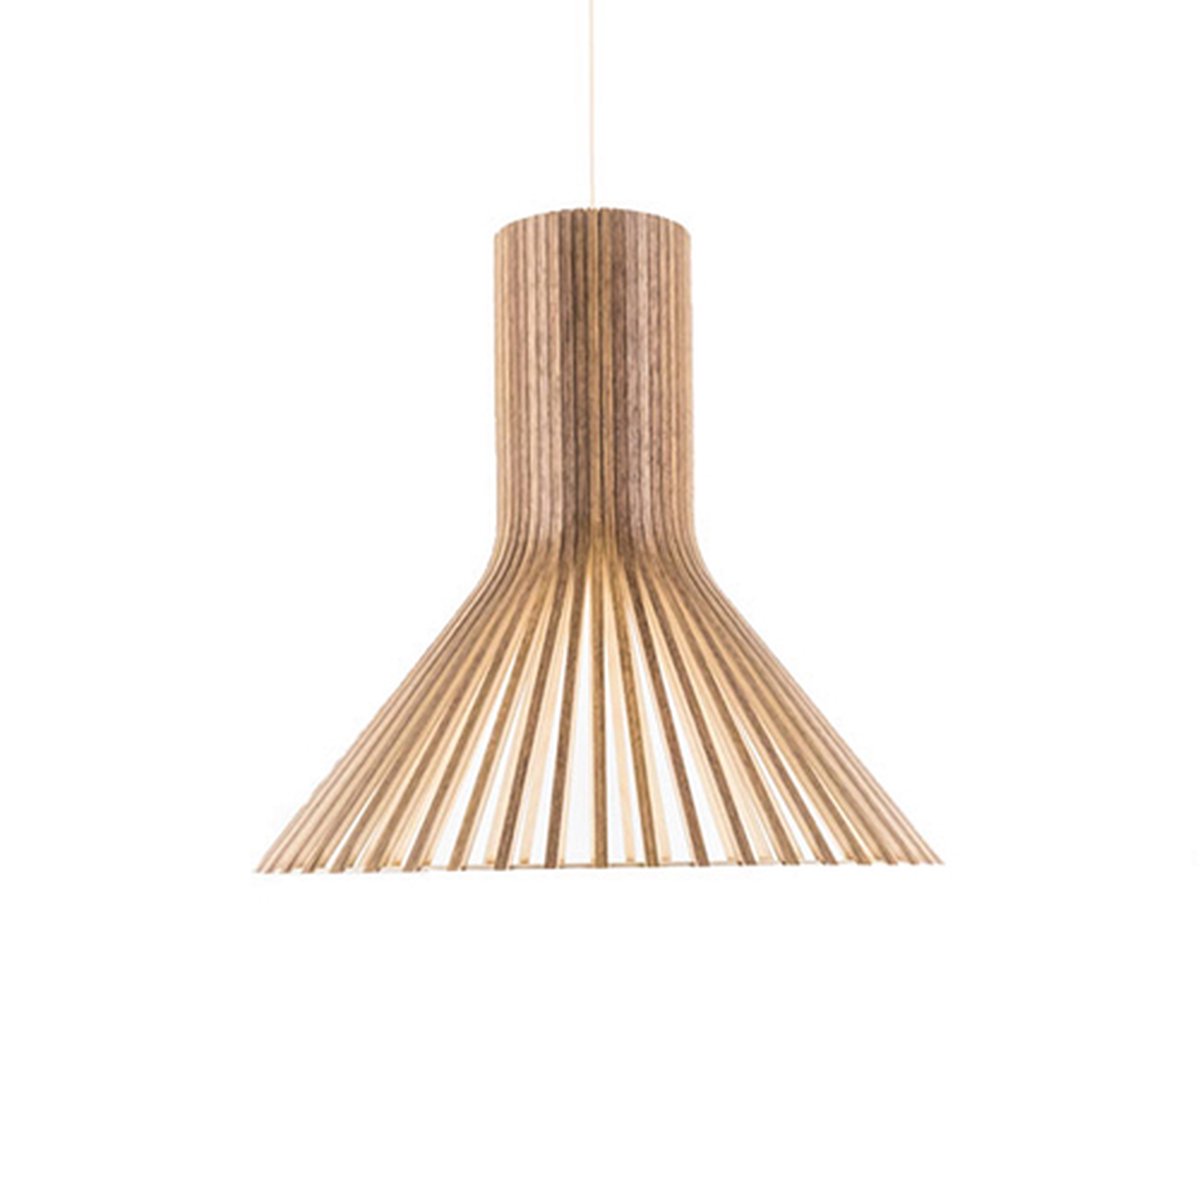 Hanglamp Romeno - Handgemaakt - Ø35cm - Bamboe - Rotan - Inclusief lichtbron - Natuurlijke uitstraling